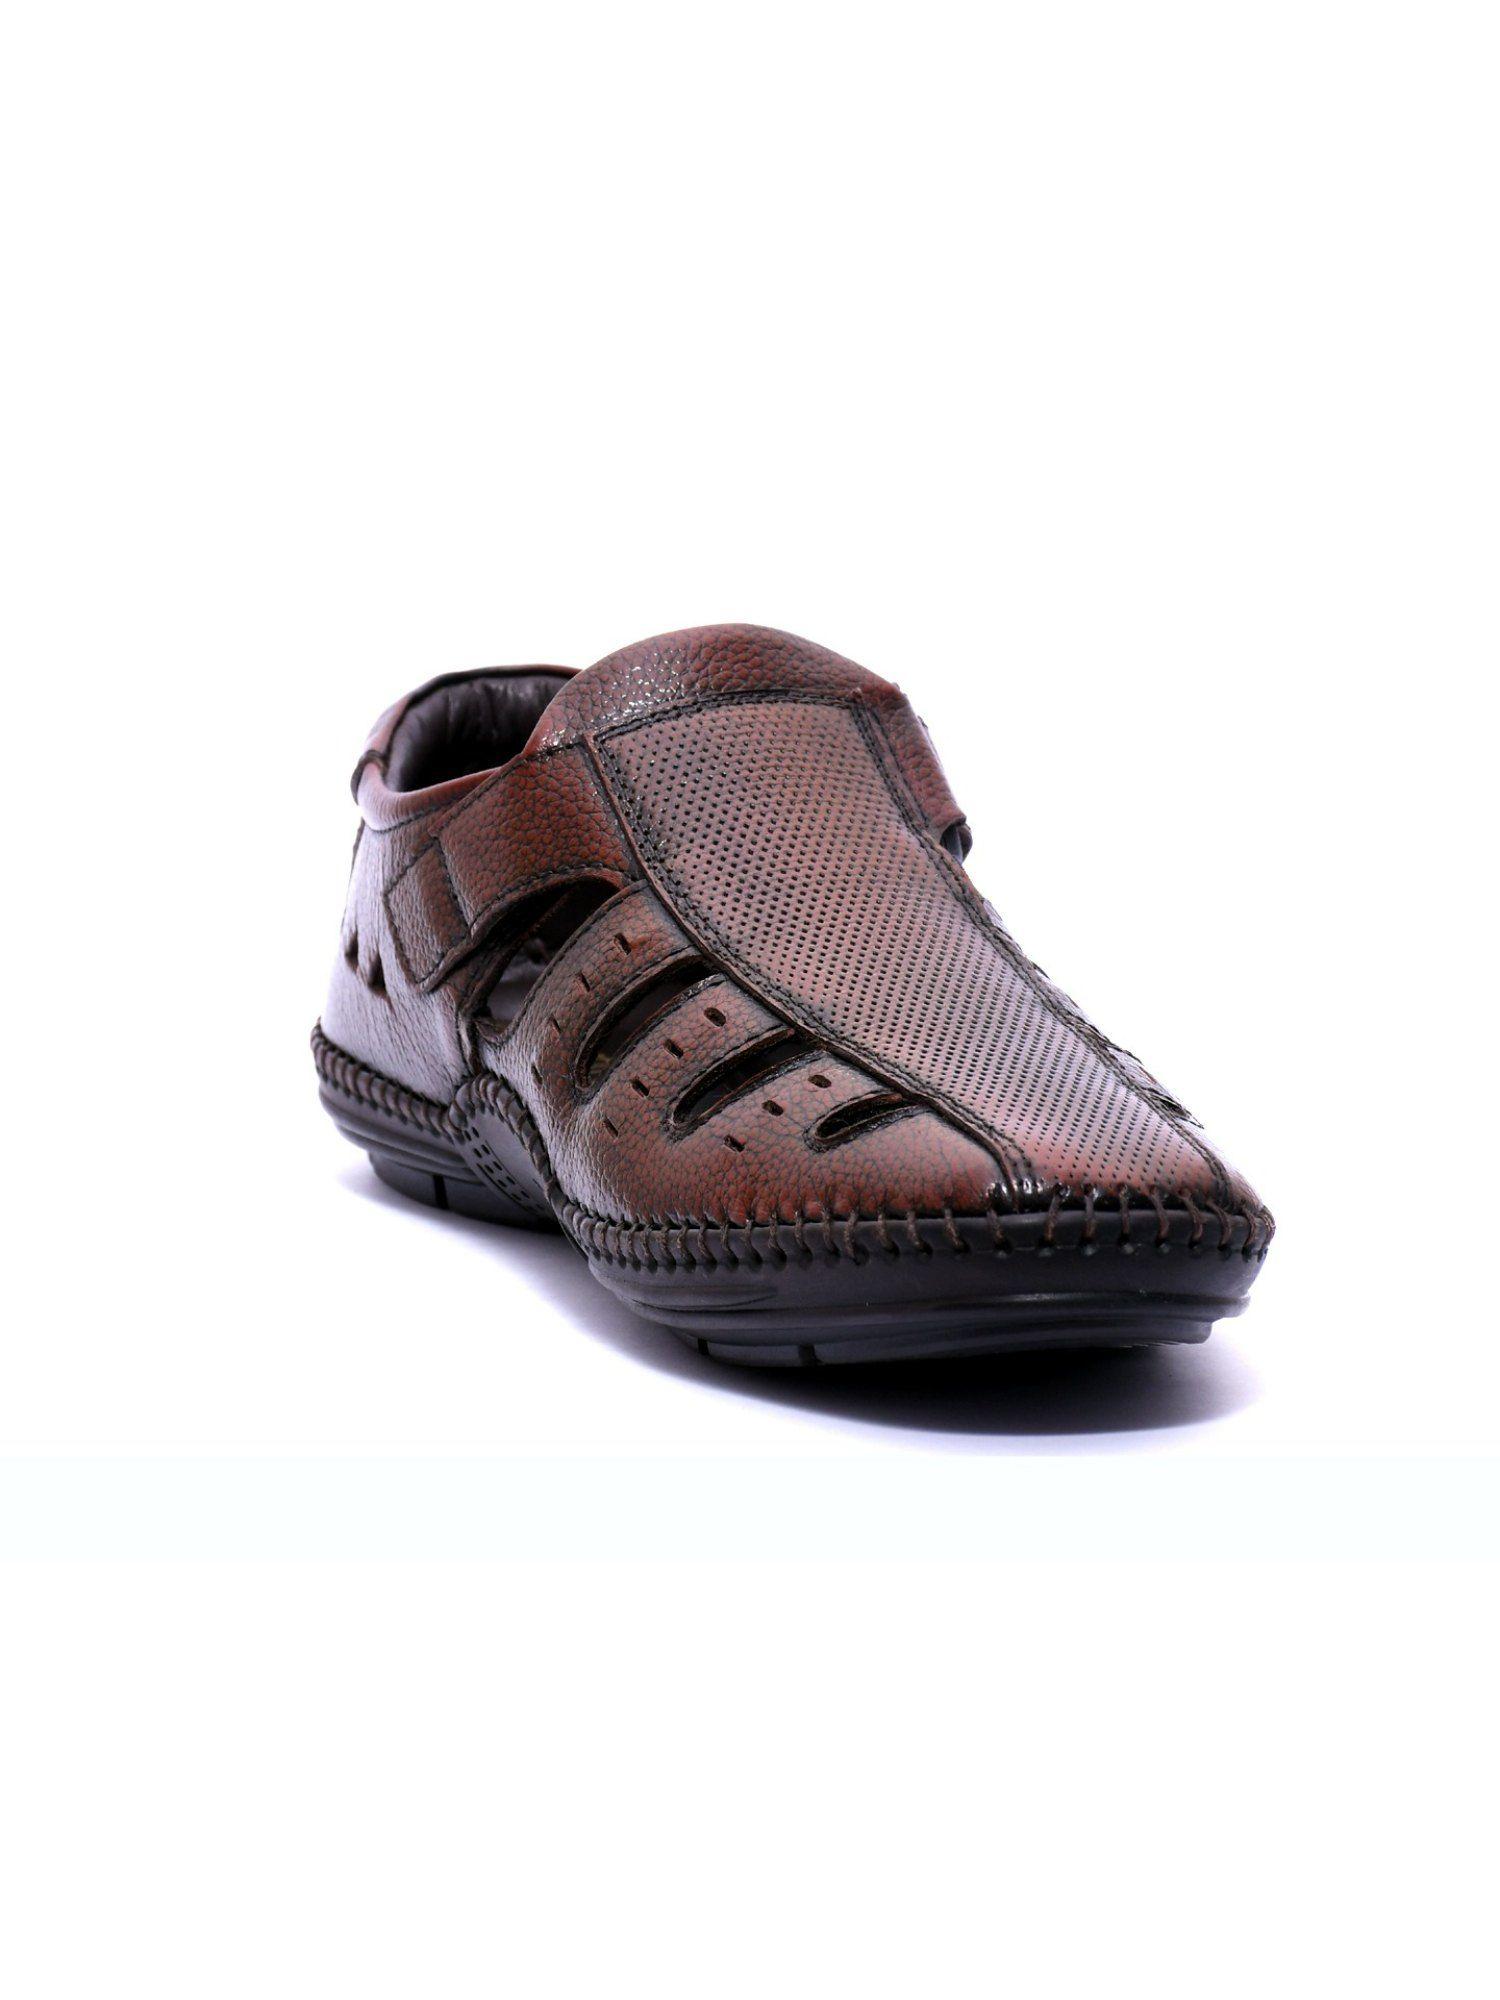 buckaroo:-crystal-fullgrain-natural-leather-brown-casual-closed-sandal-for-men